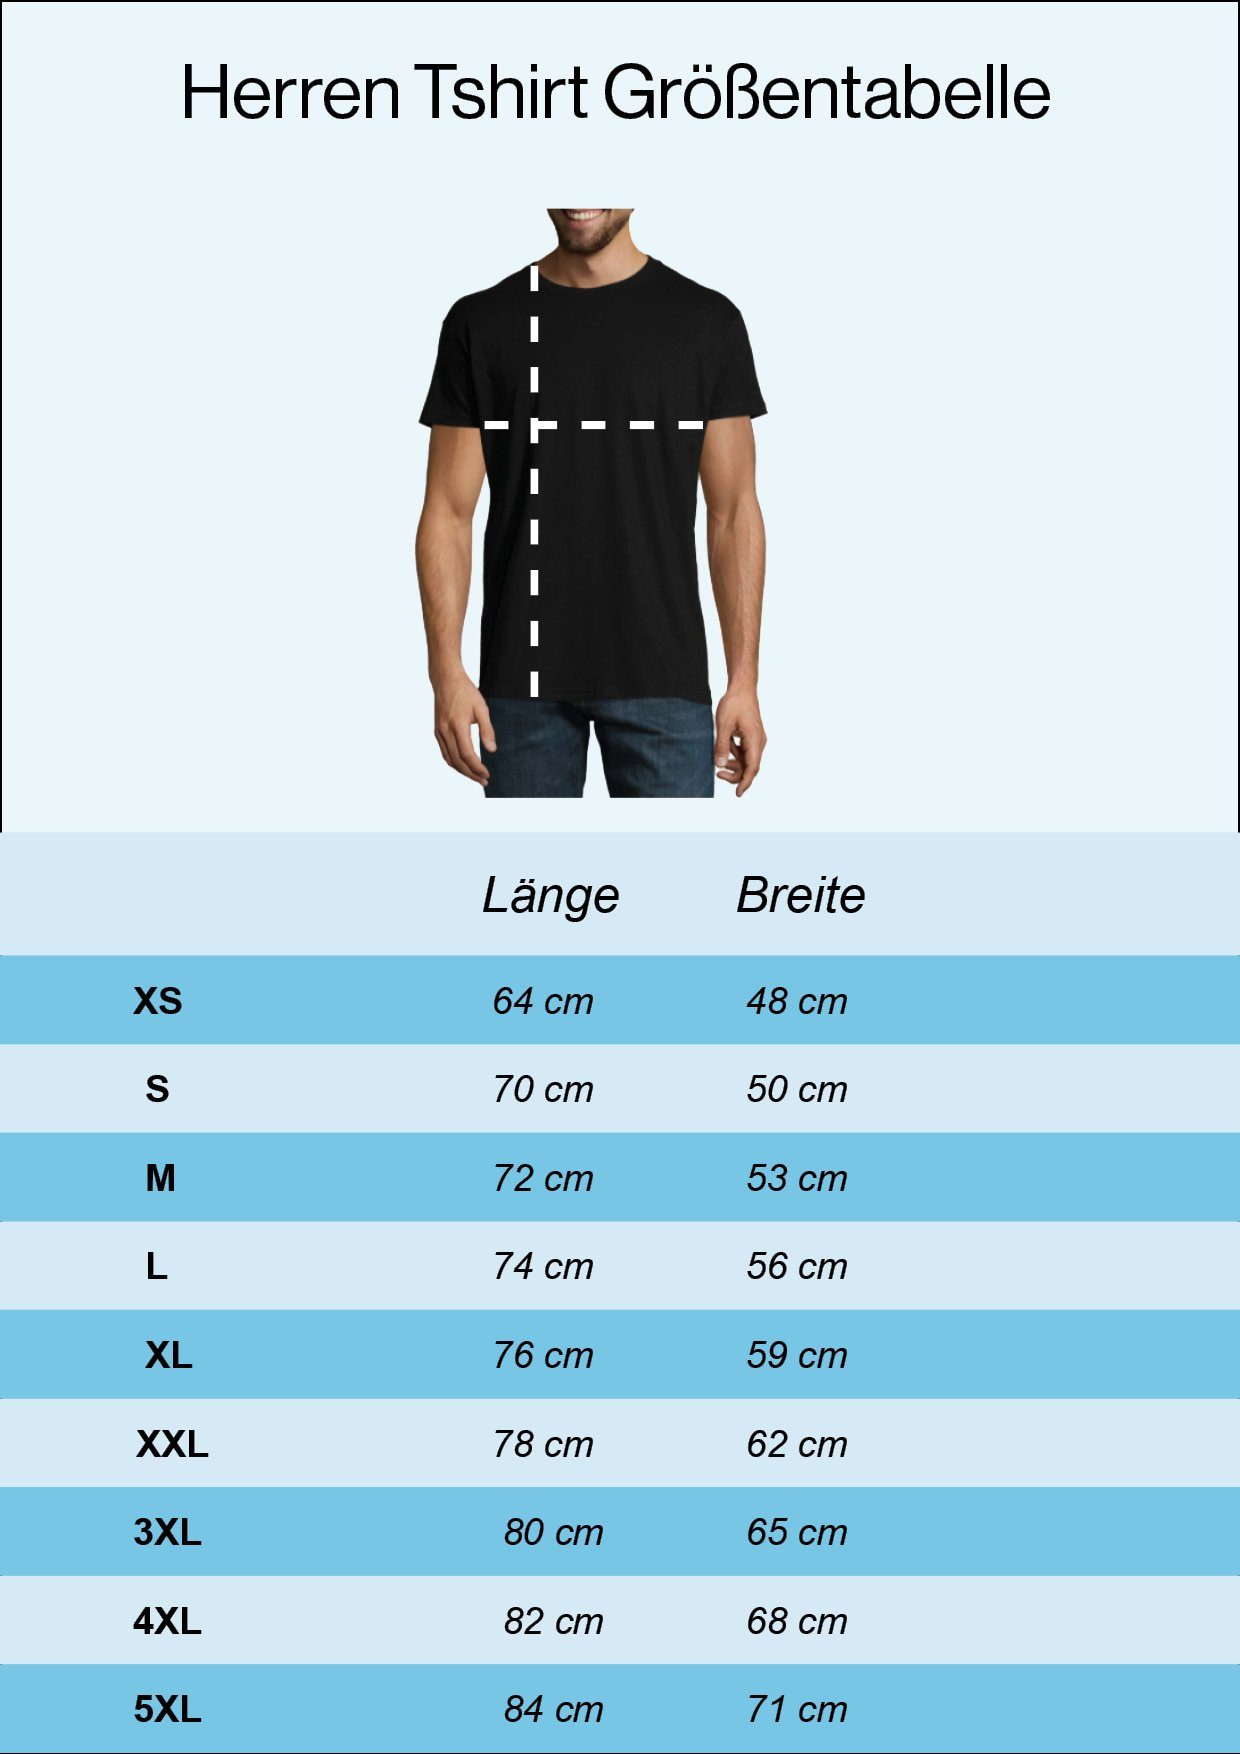 Youth Frontprint Therapie mit Boxen Designz My trendigem Herren Navyblau T-Shirt Shirt Is